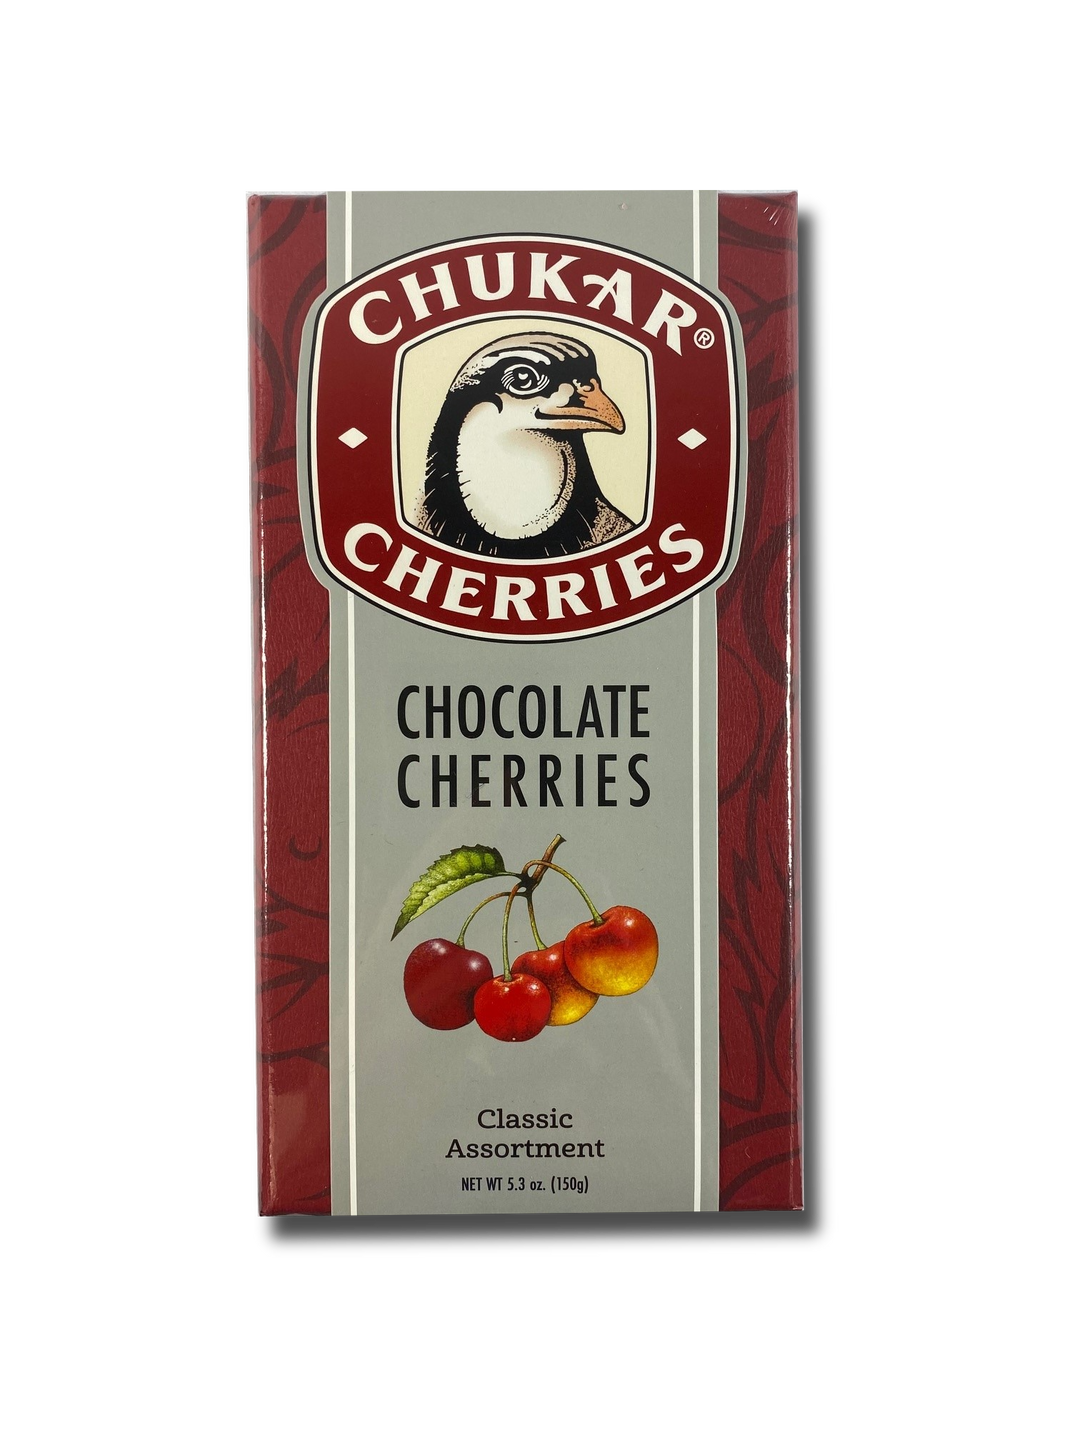 Chukar Cherries Assorted Chocolate Cherries